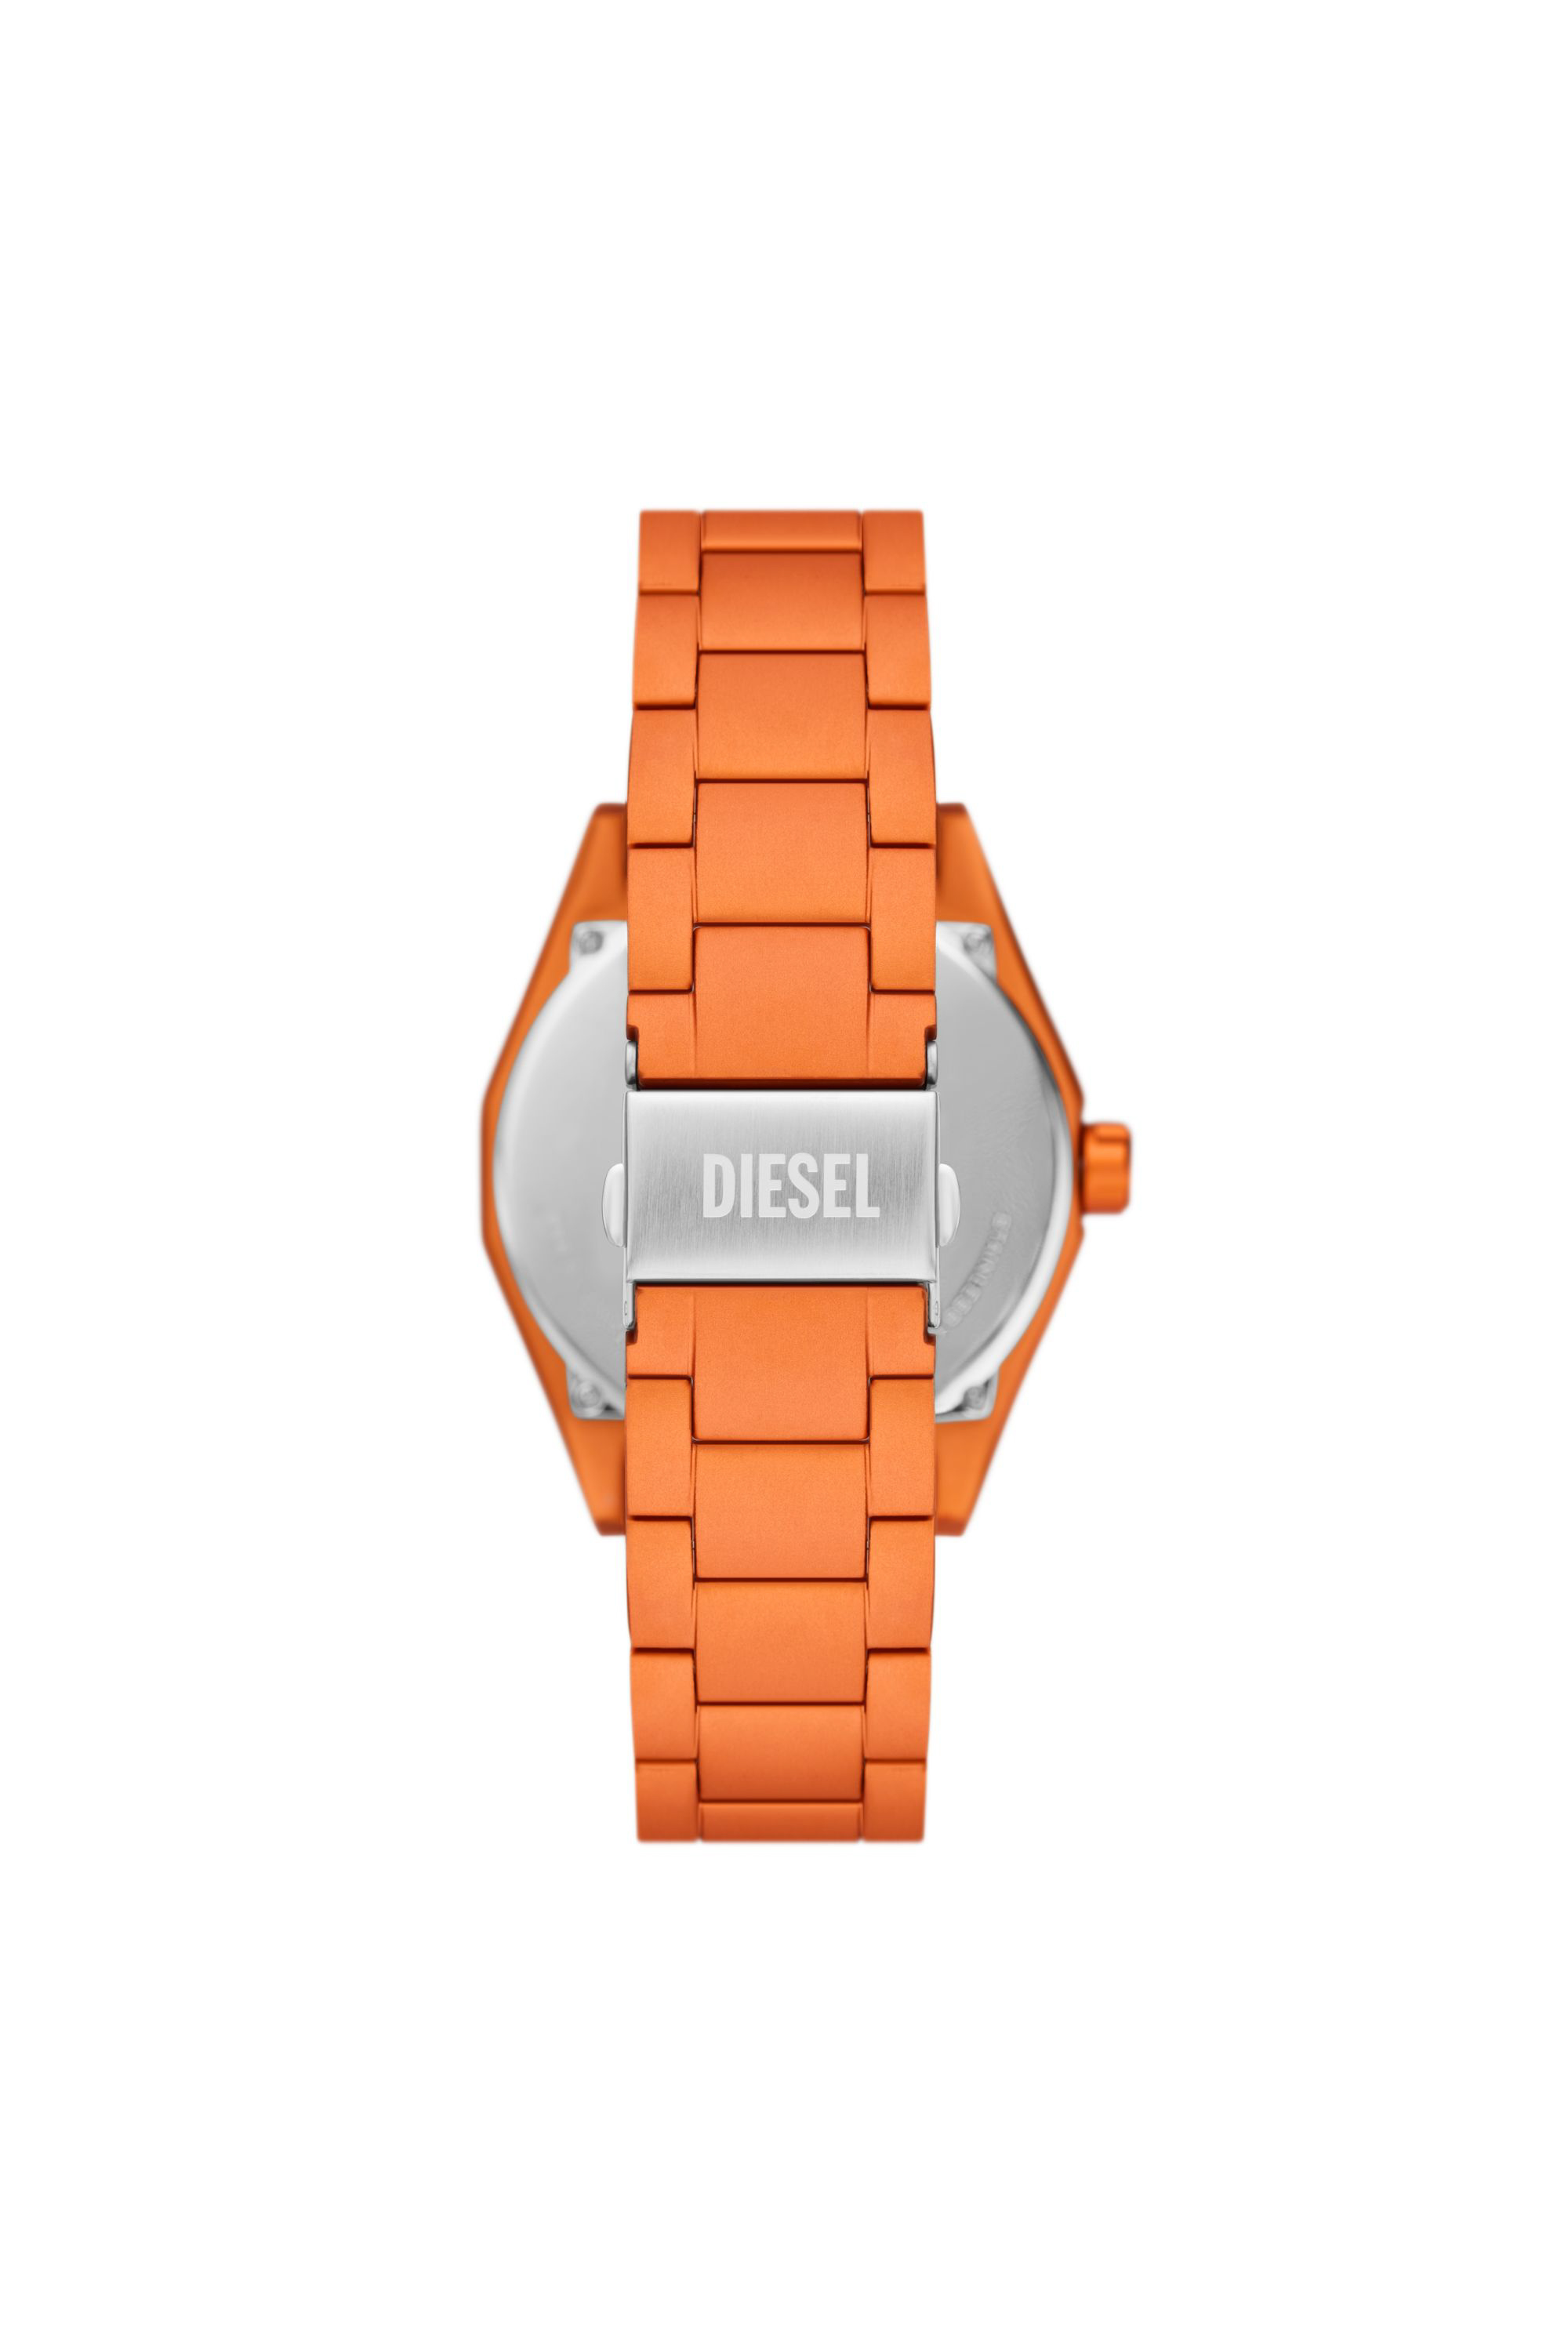 Diesel - DZ2209, Herren Scraper Armbanduhr aus orangem Aluminium mit drei Zeigern in Orange - Image 2